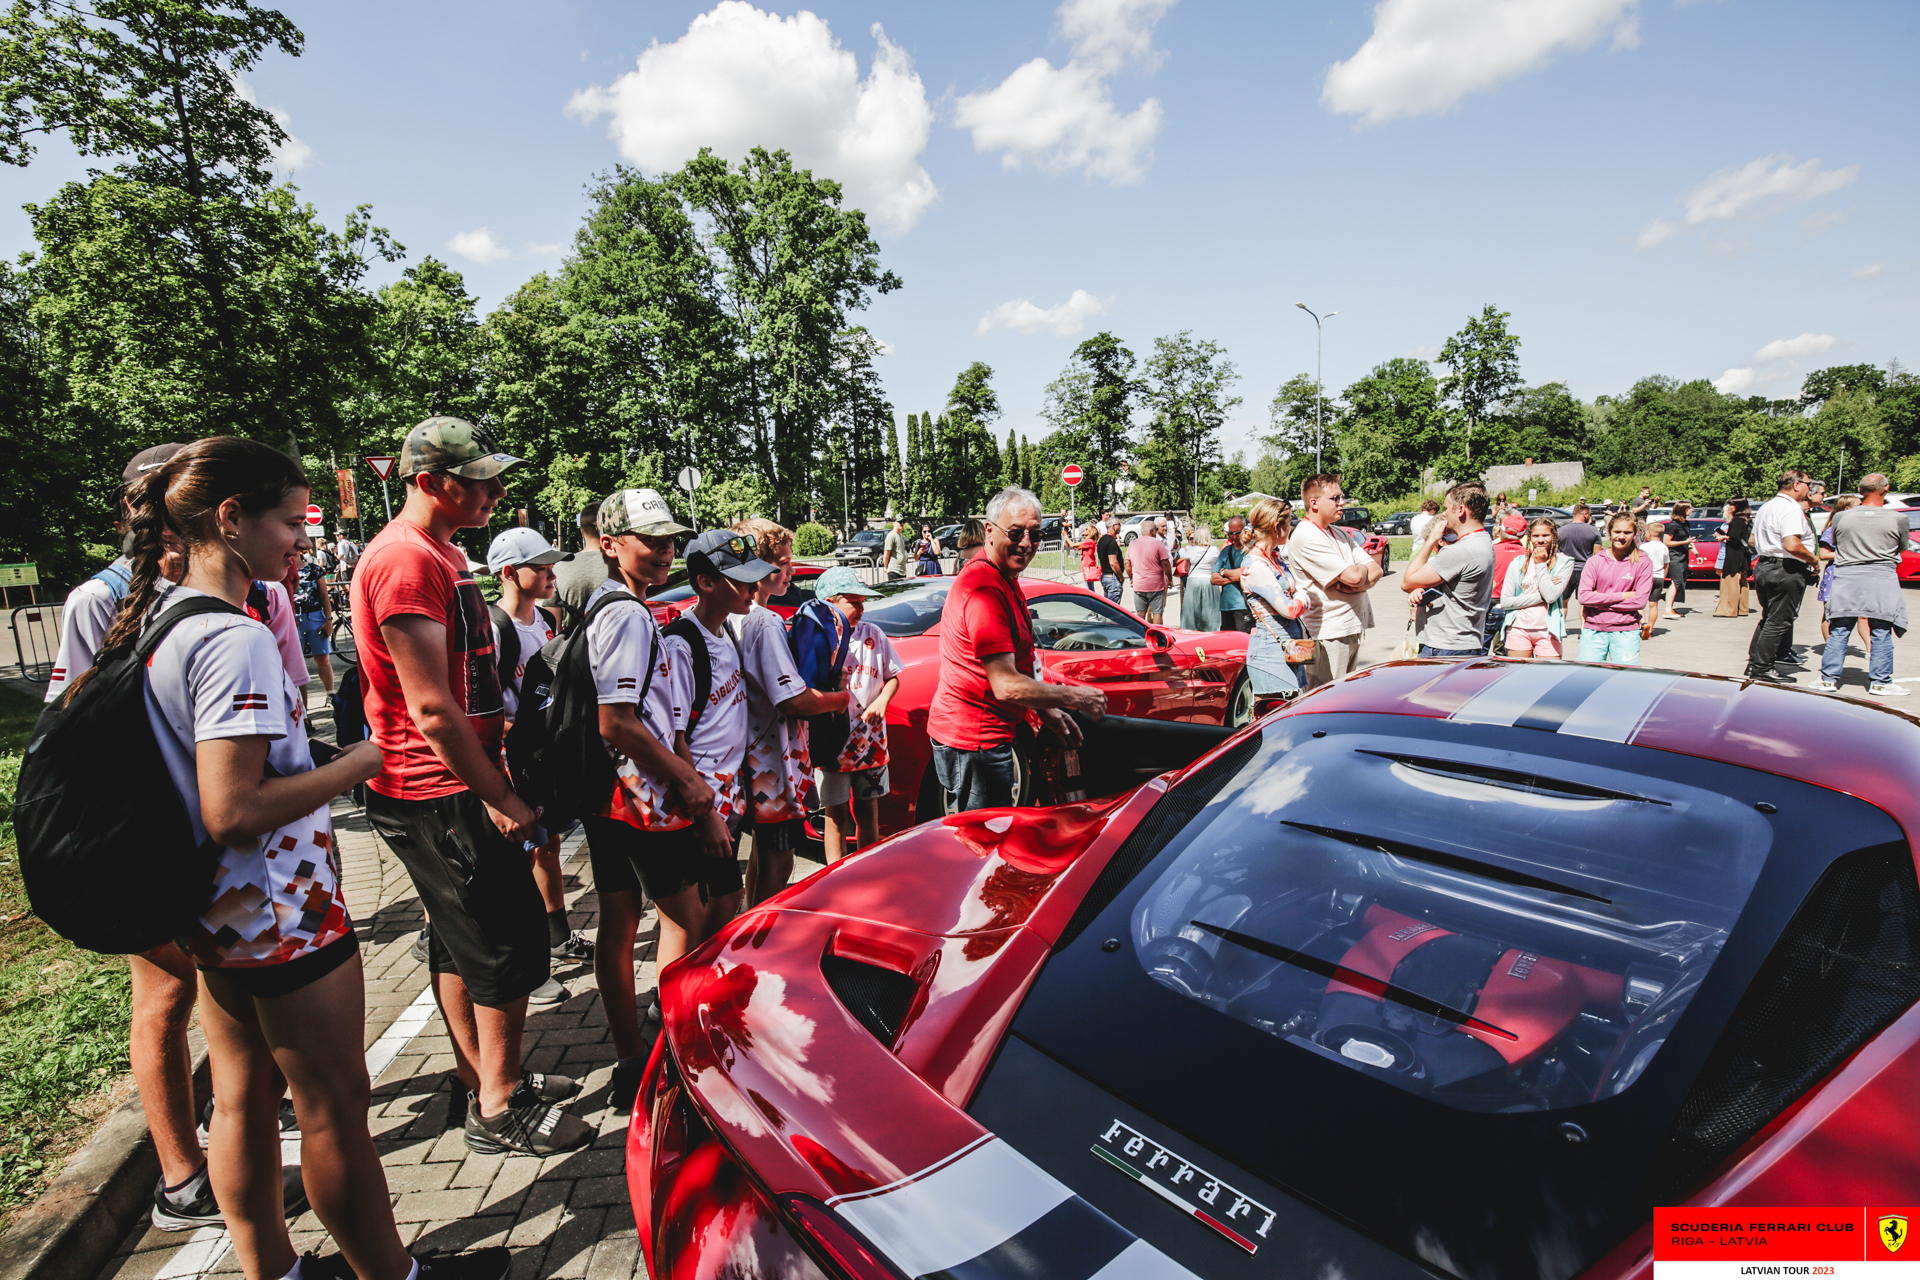 Sigulda: public around the Ferraris.